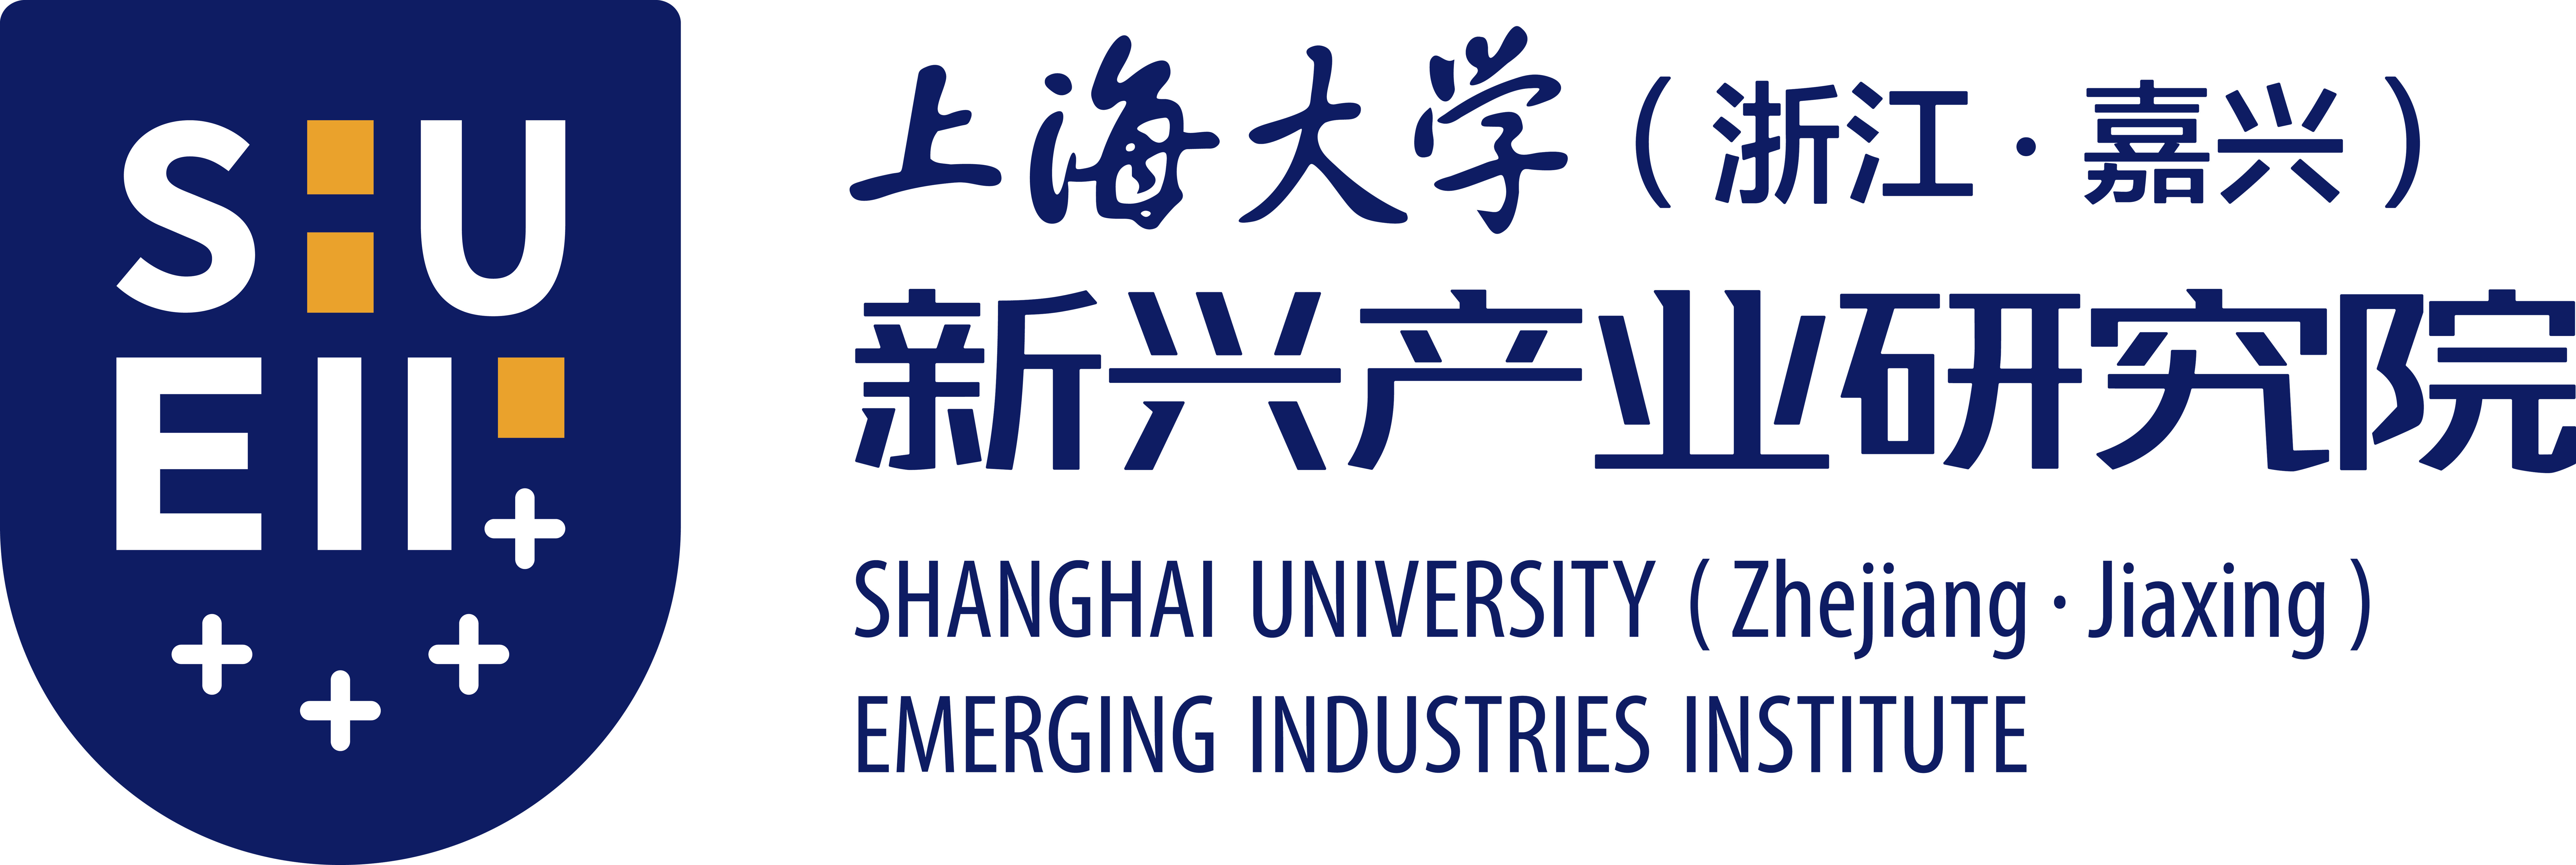 上海大学(浙江·嘉兴)新兴产业研究院事业单位非盈利机构/政府/事业